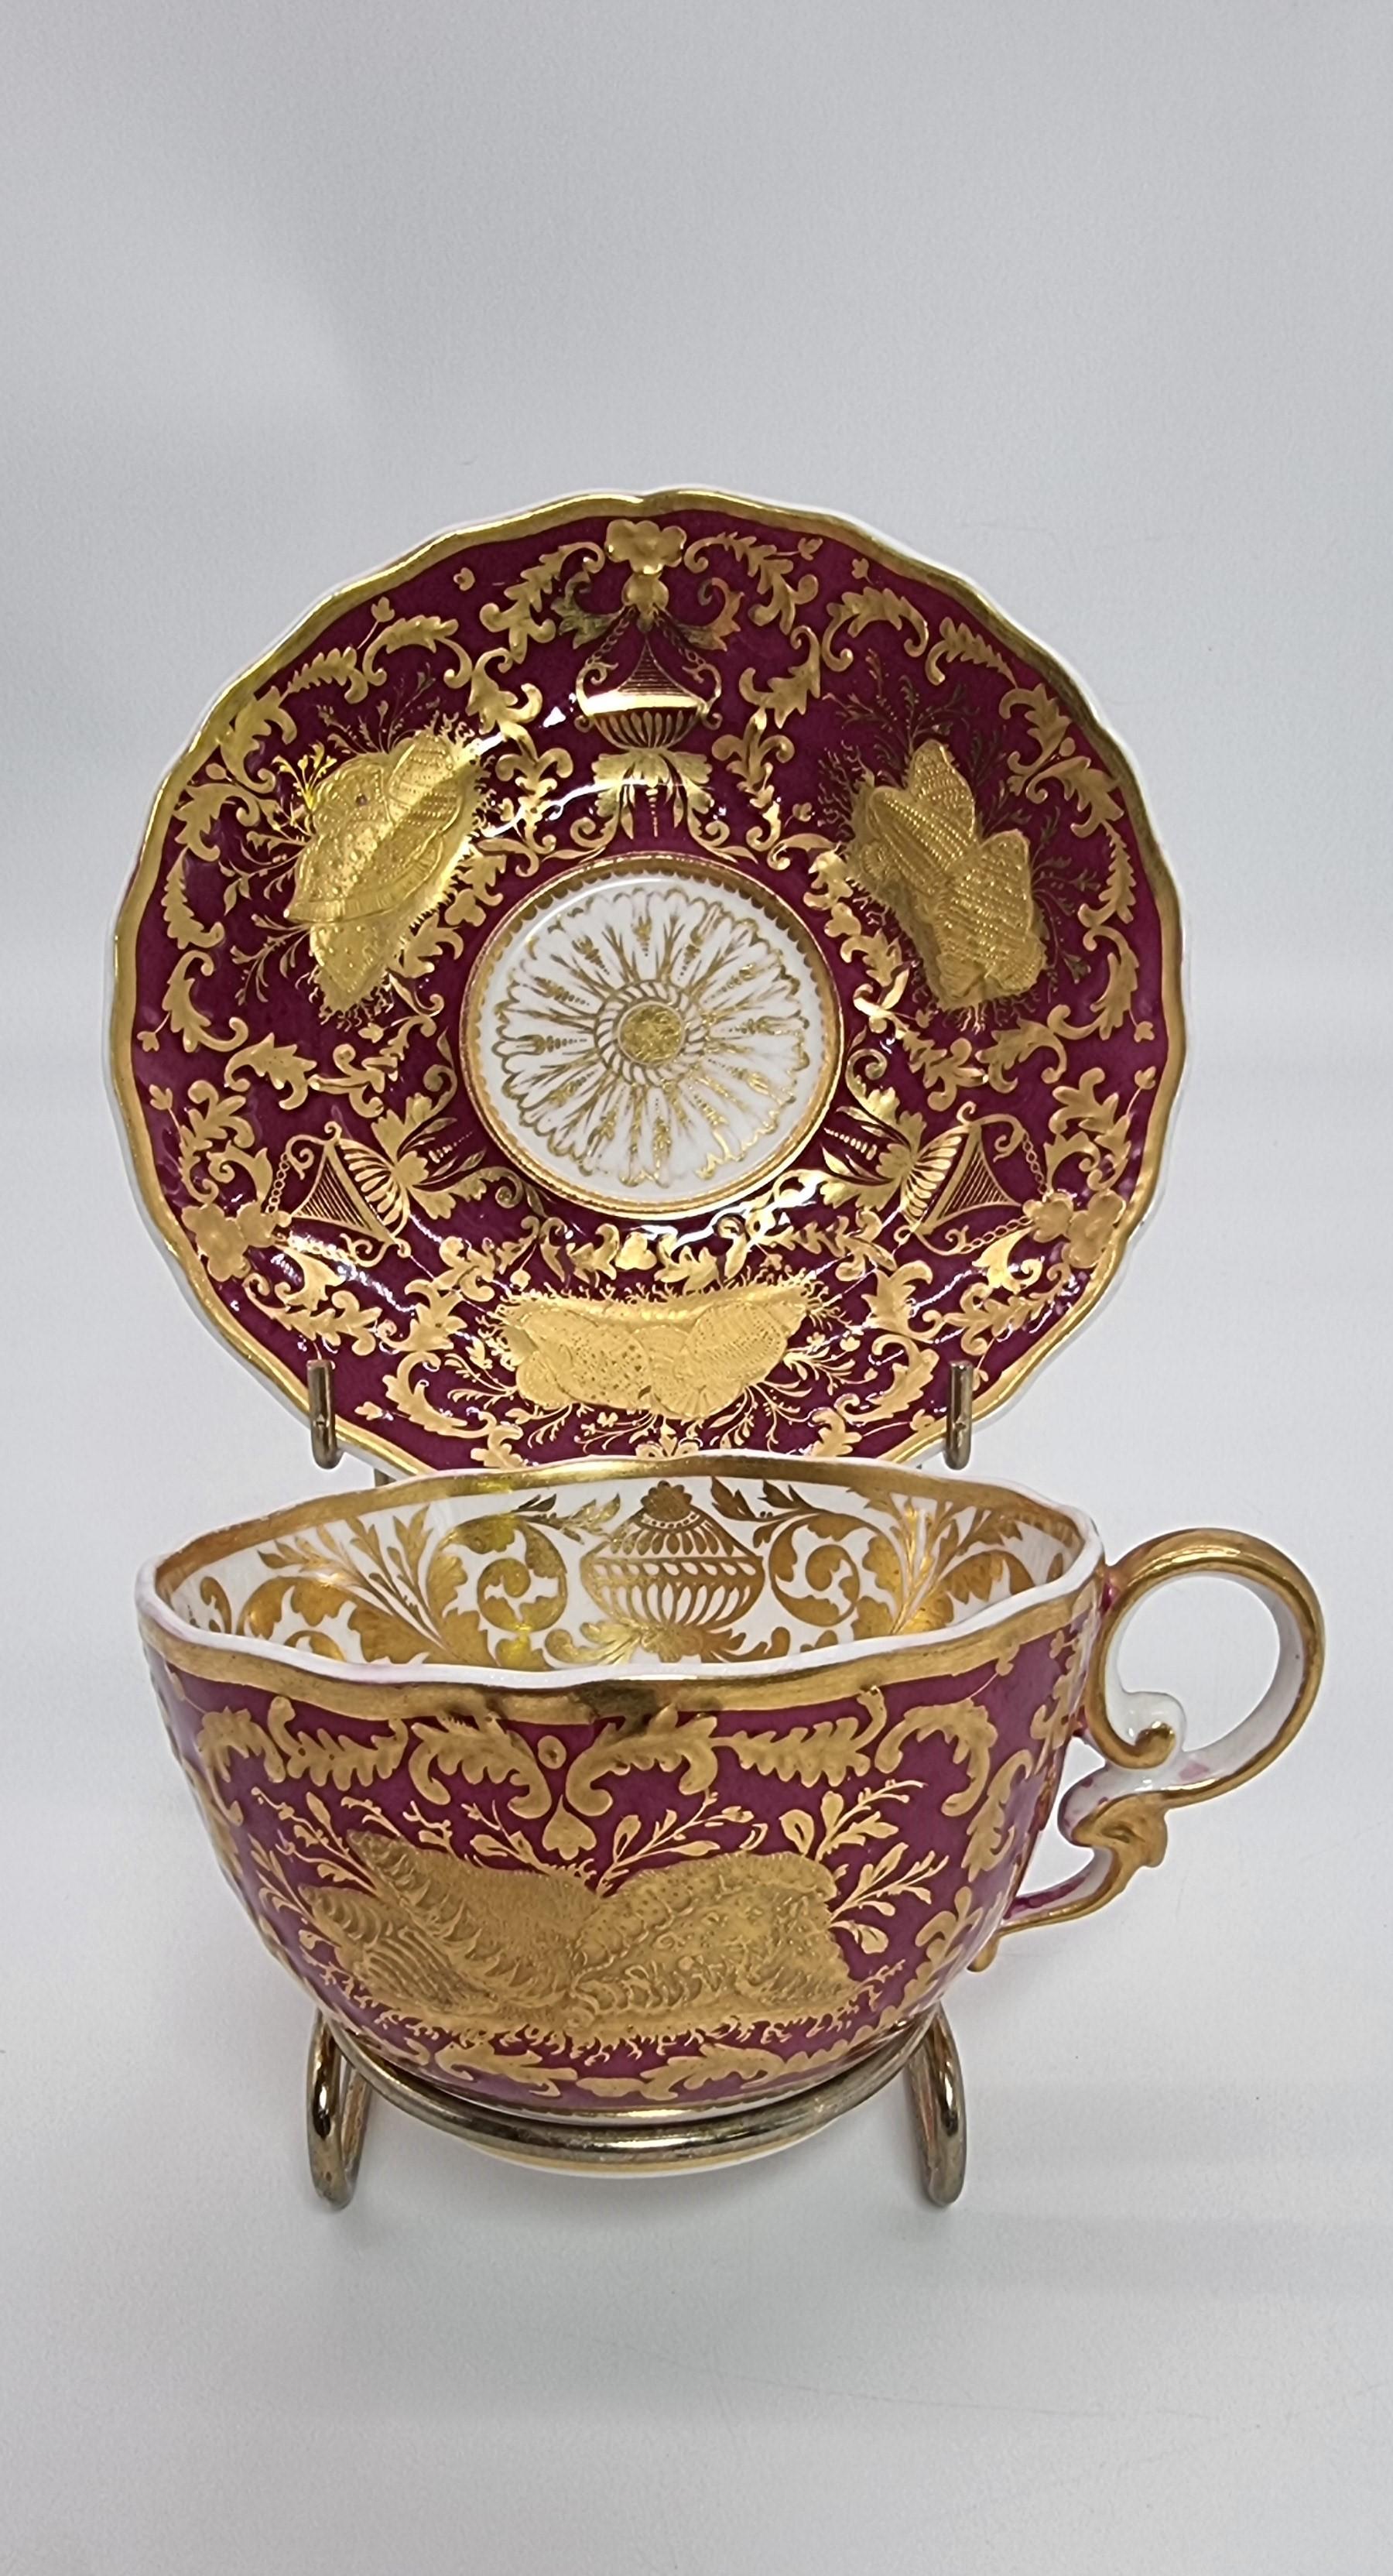 Une exquise et rare tasse et soucoupe de cabinet Spode du début du C.I.C.
Cette belle tasse et cette soucoupe de cabinet Spode, richement décorées, ont été fabriquées dans cette manufacture de porcelaine anglaise de haute qualité, vers 1830.  Le